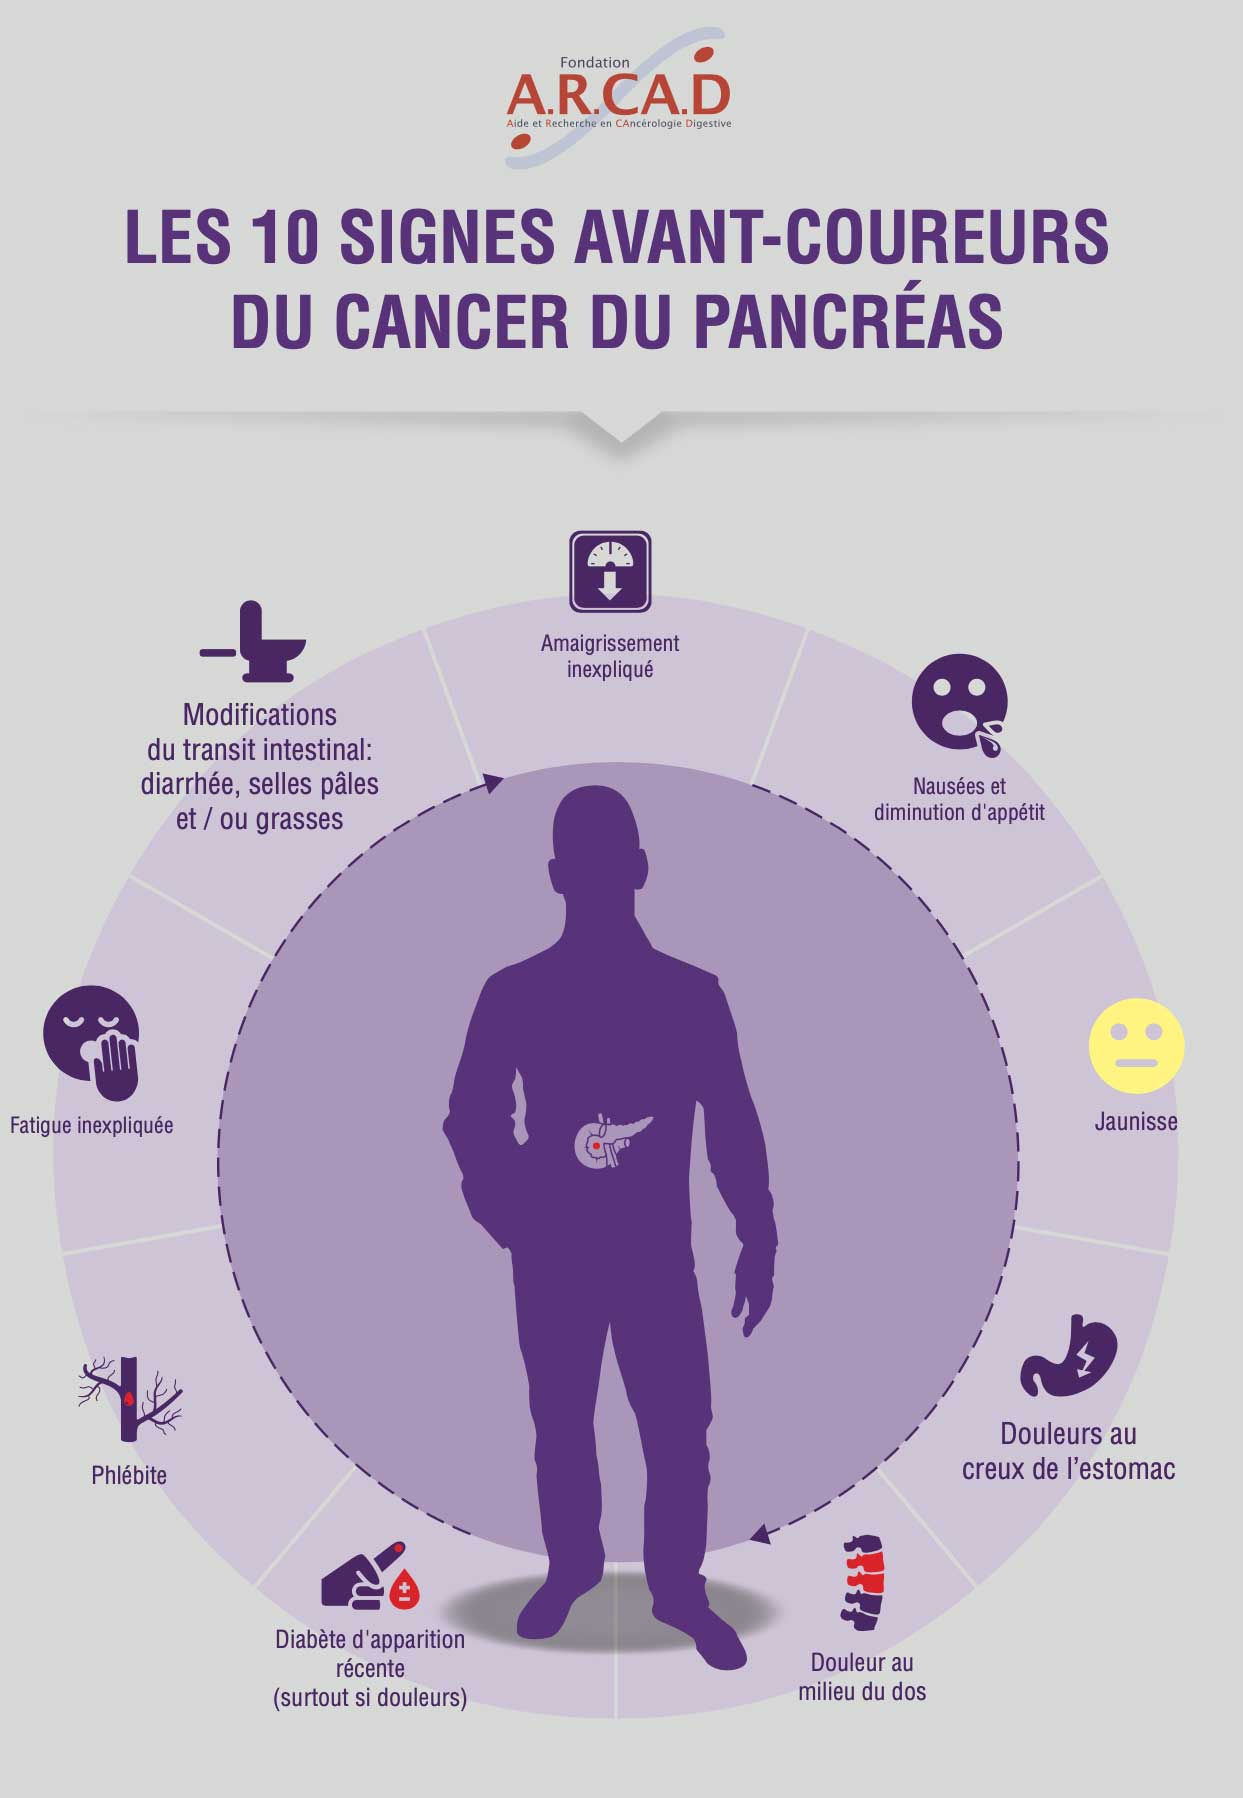 Les signes avant-coureurs du cancer du pancréas